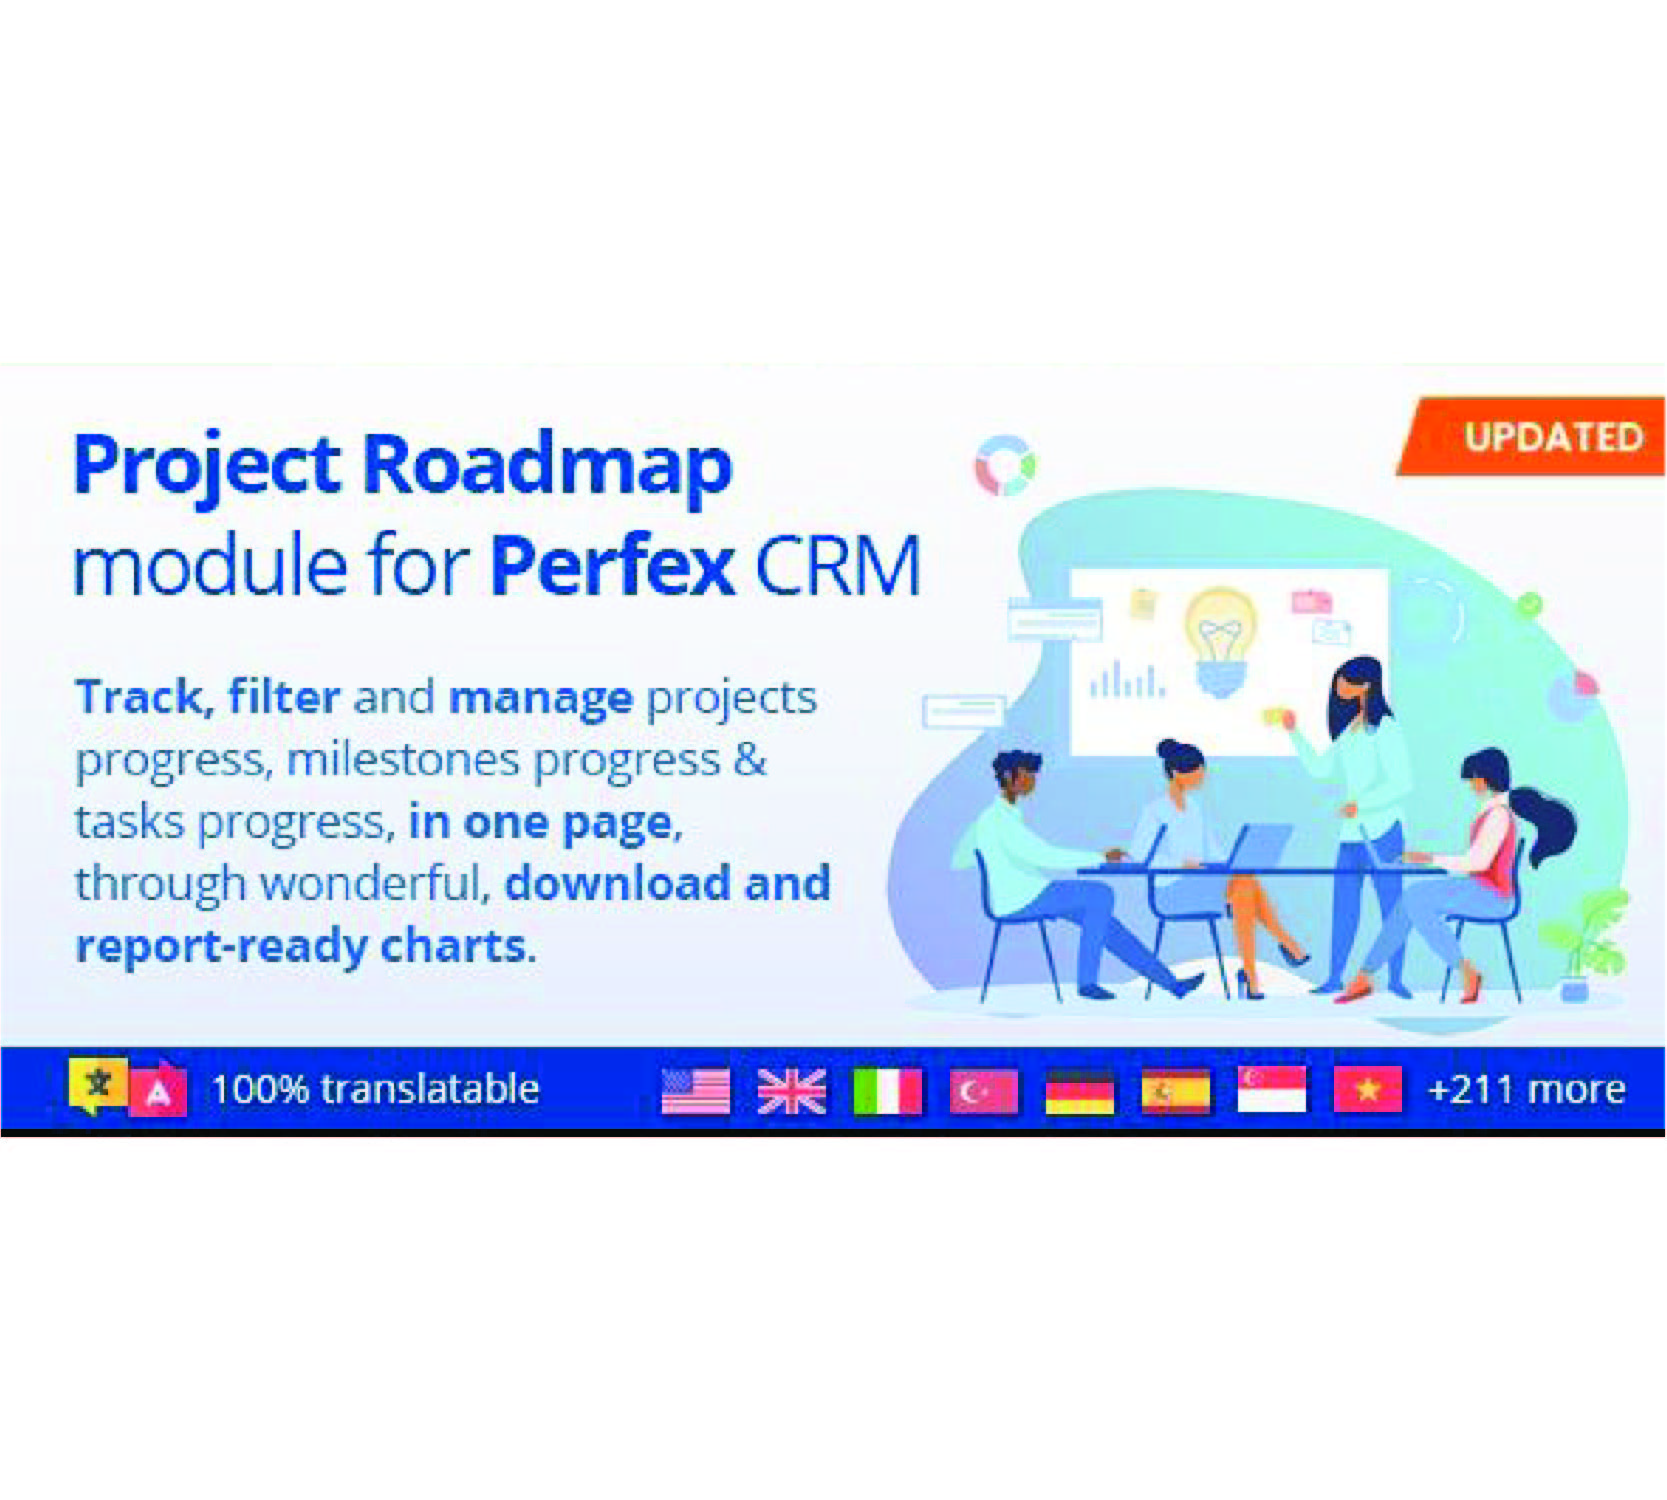 项目路线图 - Perfex CRM 项目的高级报告和工作流程模块